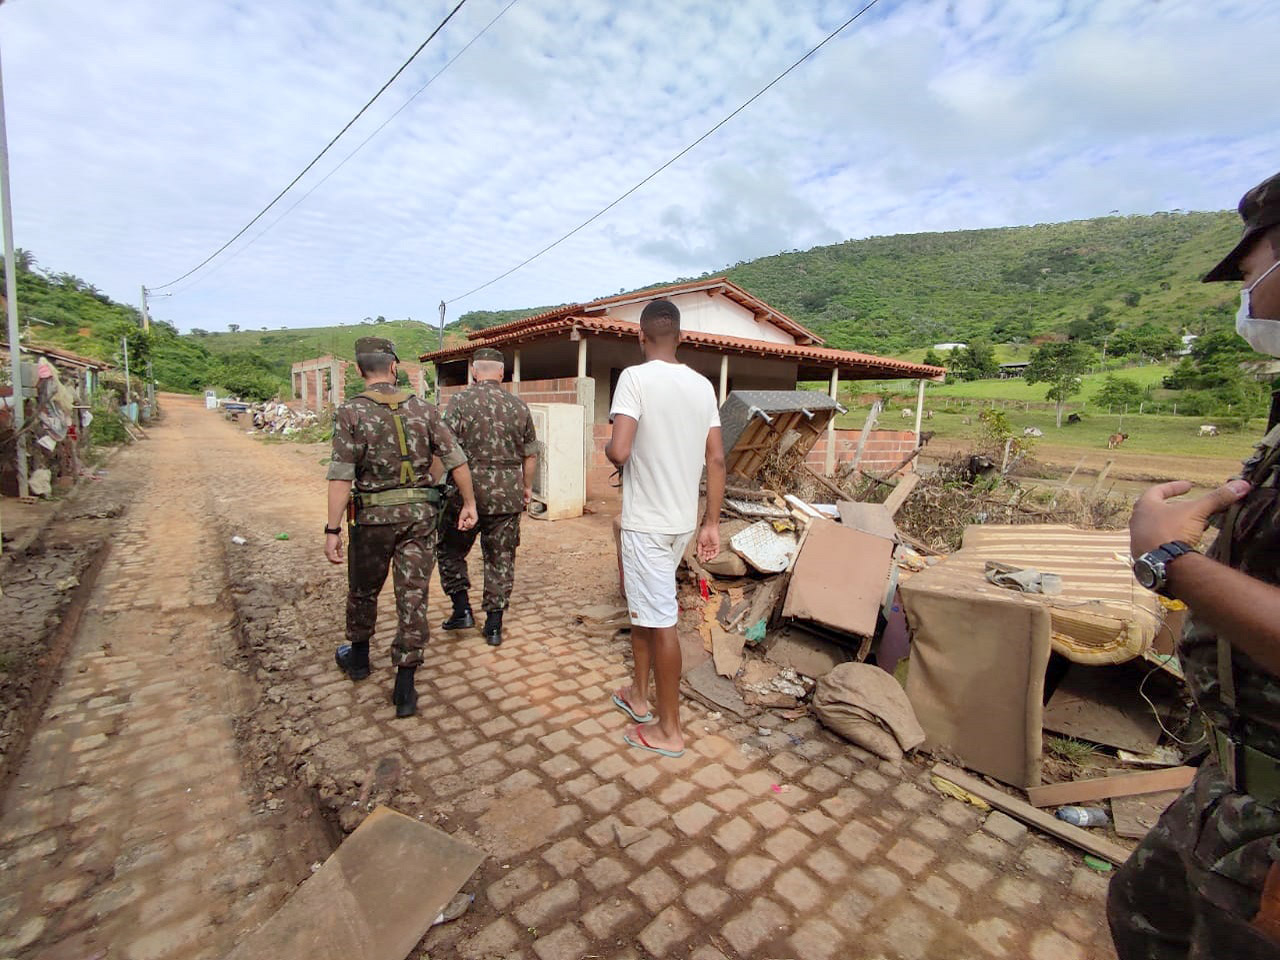 Exército auxilia população de 37 municípios atingidos por enchentes